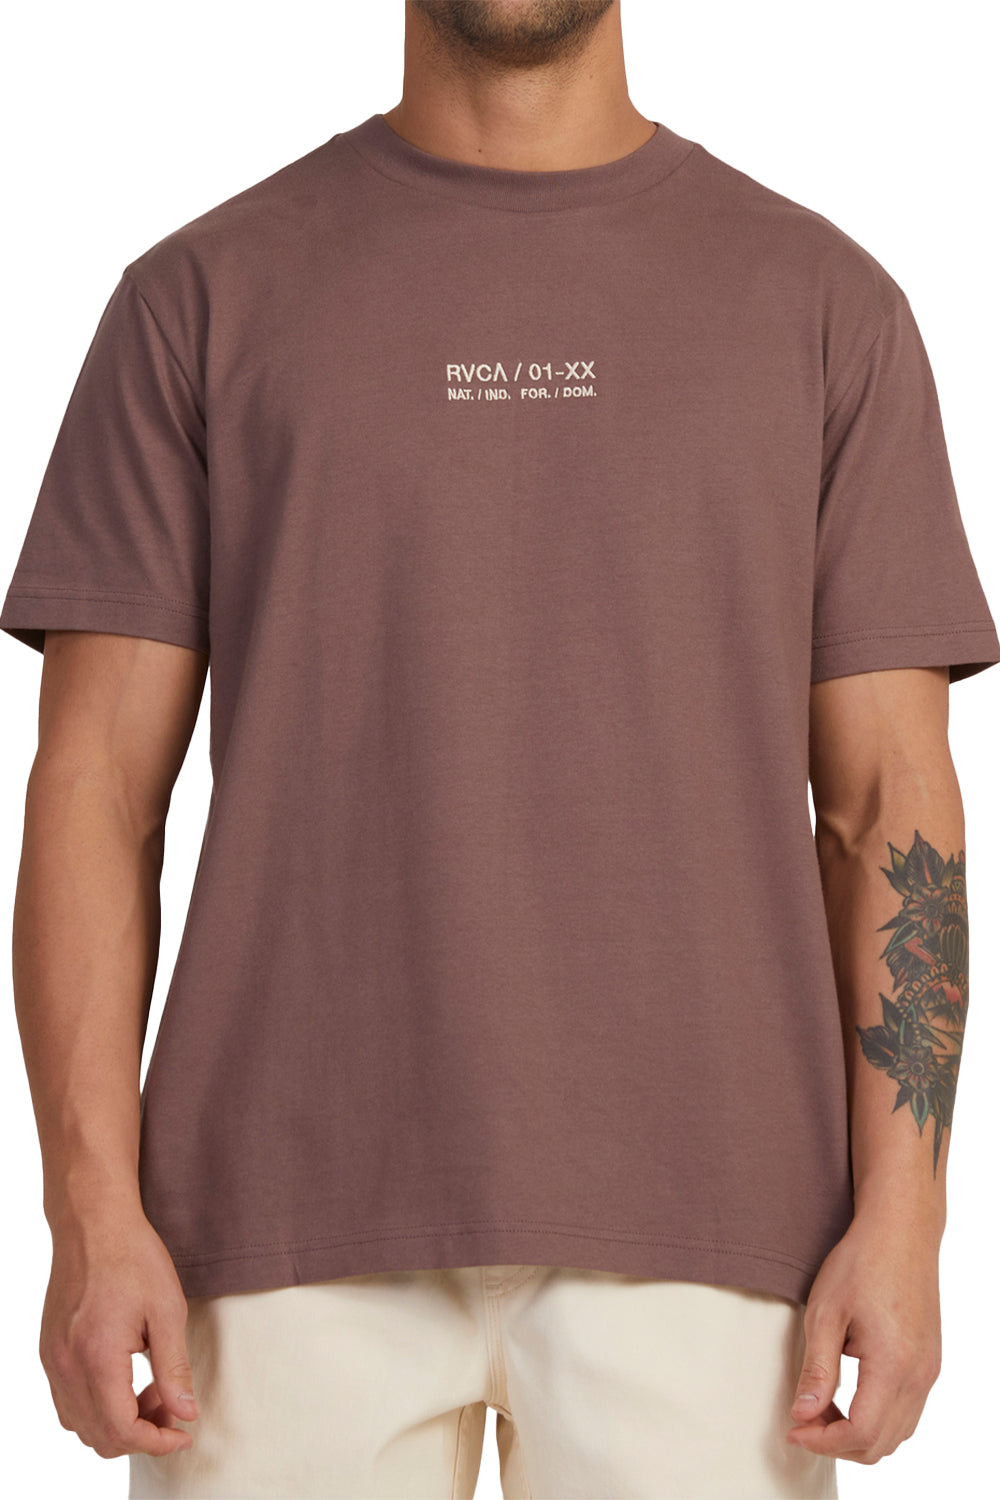 RVCA Mens Circa T-Shirt